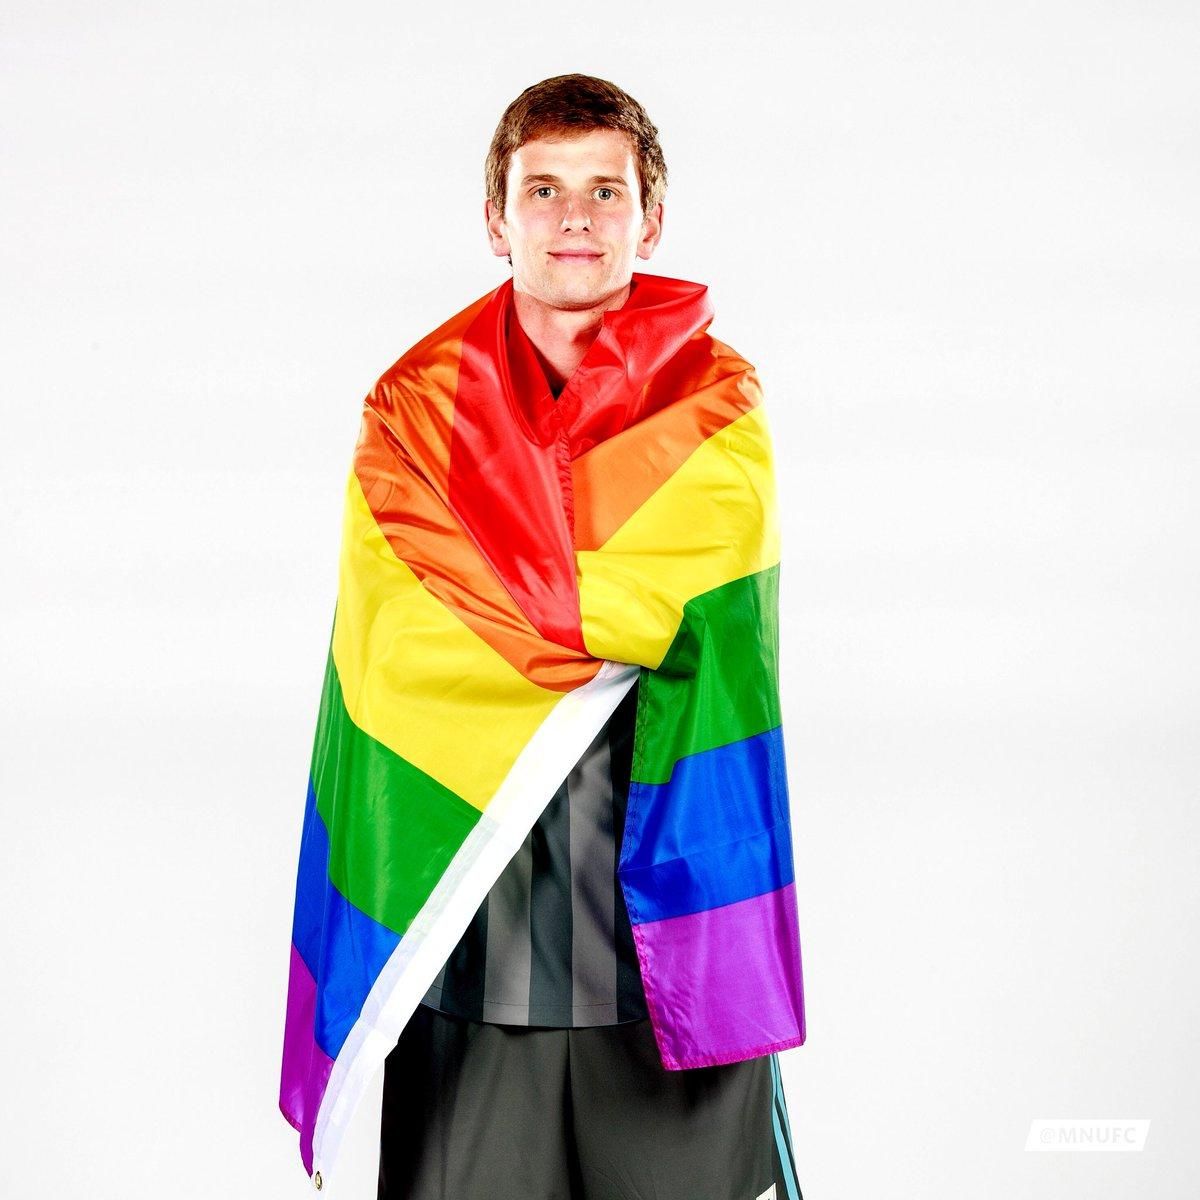 Major League Soccer Player Collin Martin Comes Out as Gay